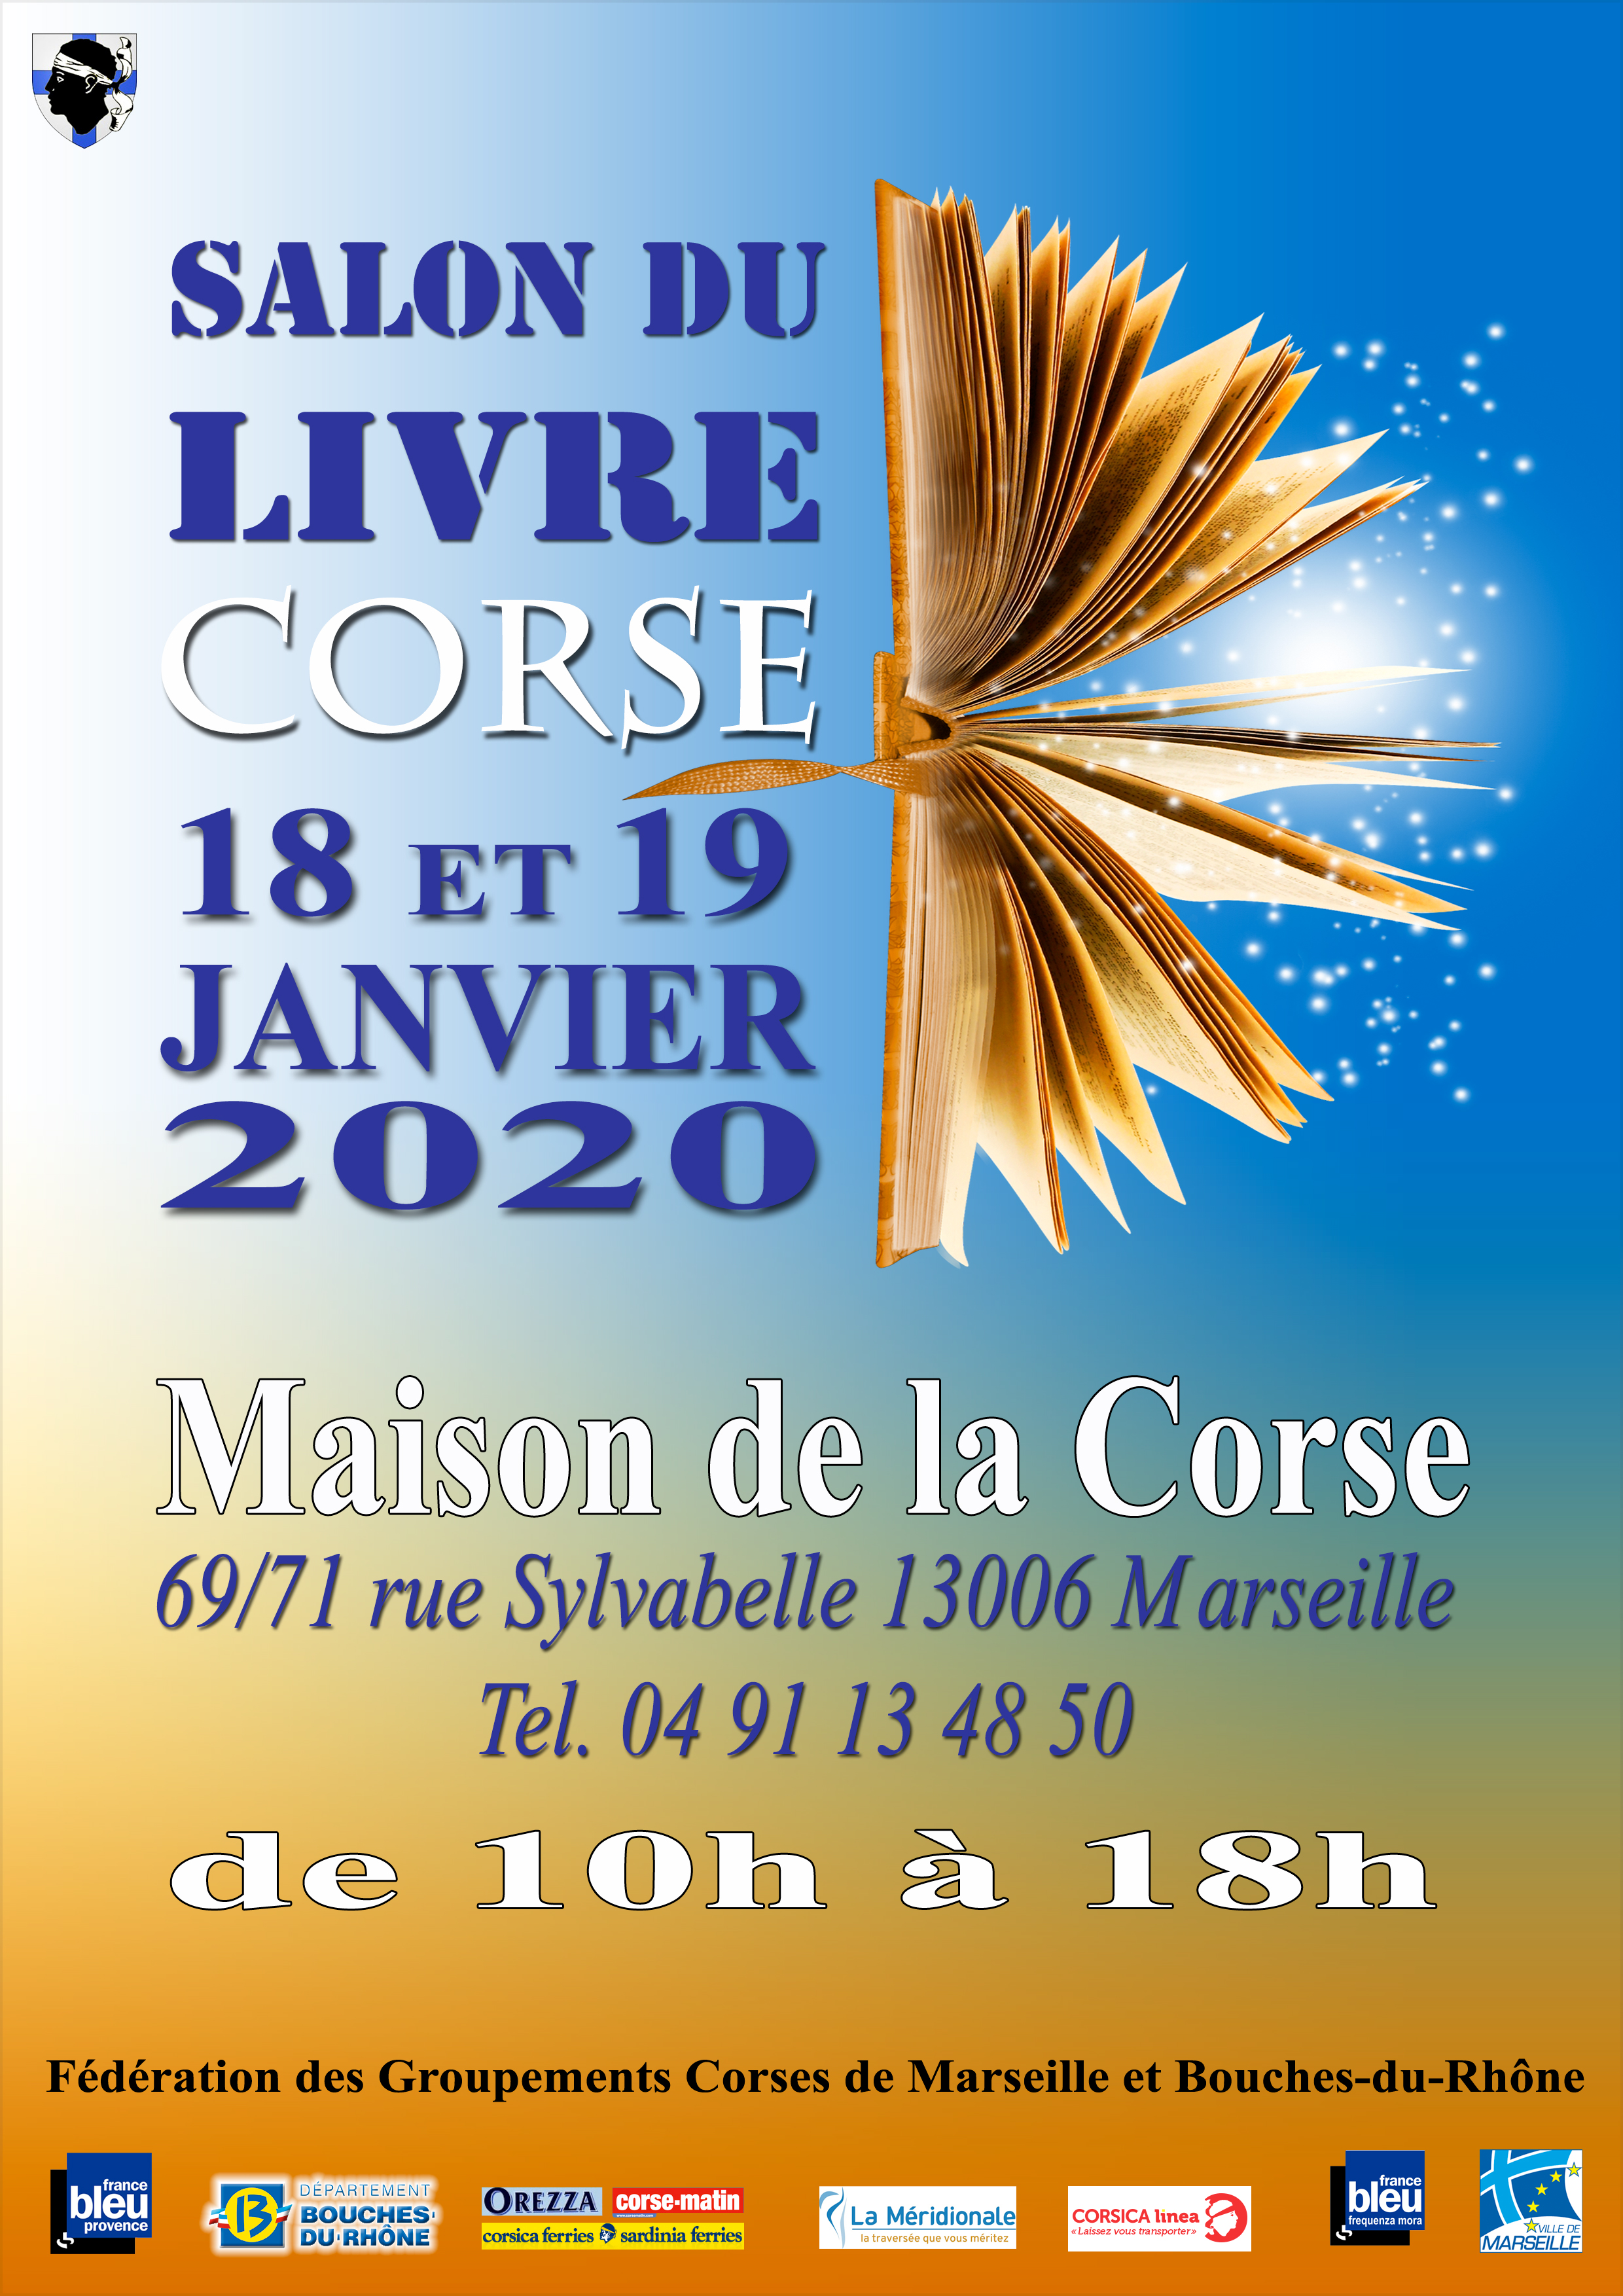 Marseille : Le salon du livre de la Maison de la Corse revient les 18 et 19 janvier